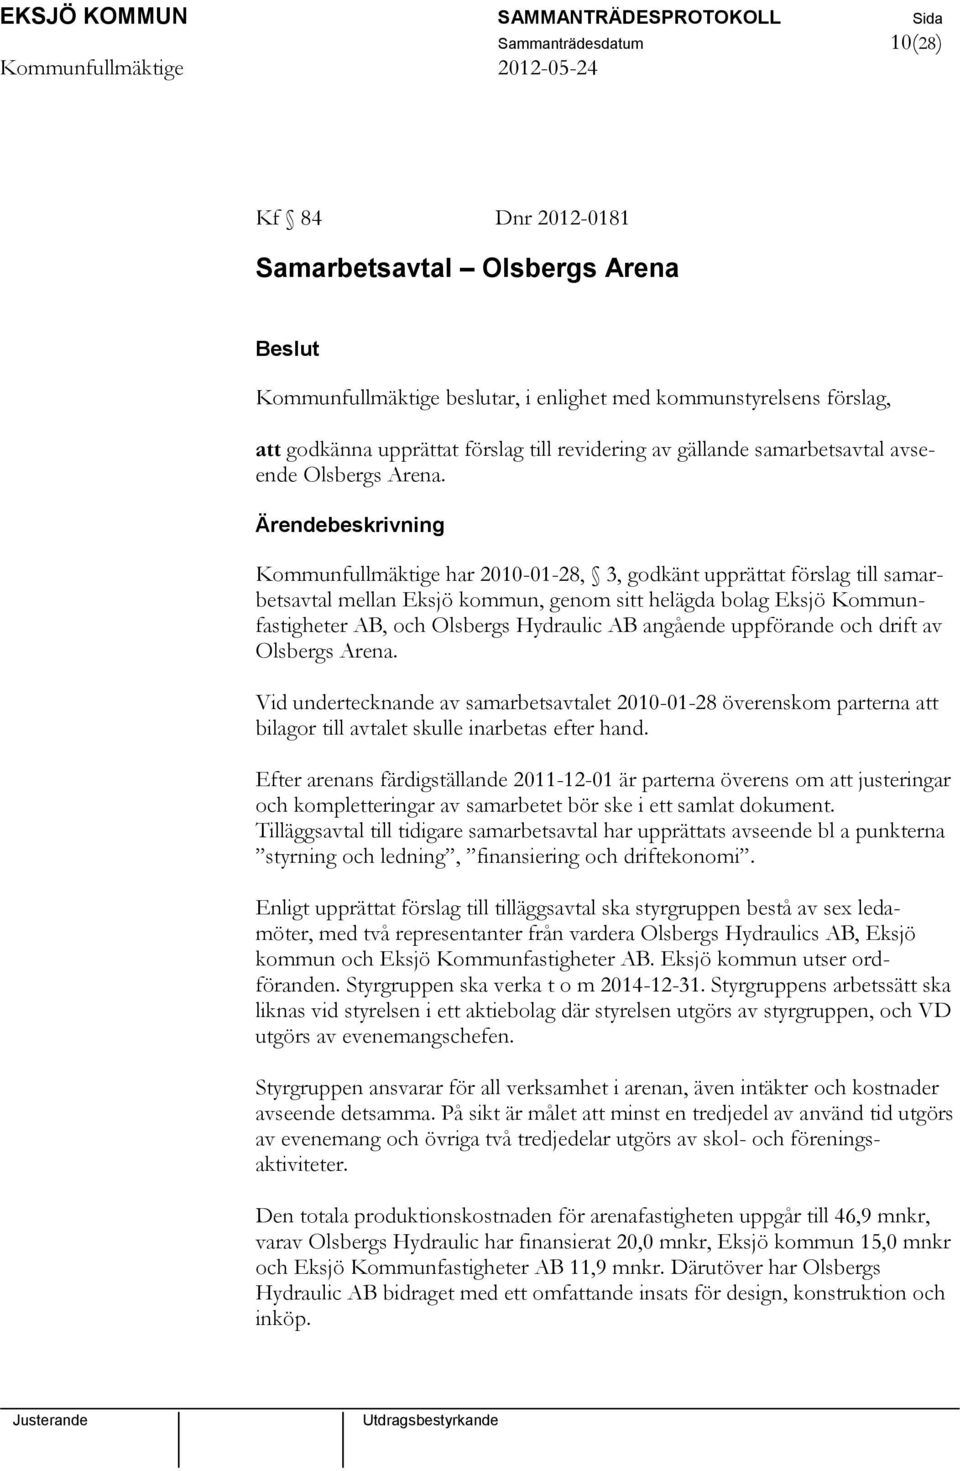 Kommunfullmäktige har 2010-01-28, 3, godkänt upprättat förslag till samarbetsavtal mellan Eksjö kommun, genom sitt helägda bolag Eksjö Kommunfastigheter AB, och Olsbergs Hydraulic AB angående